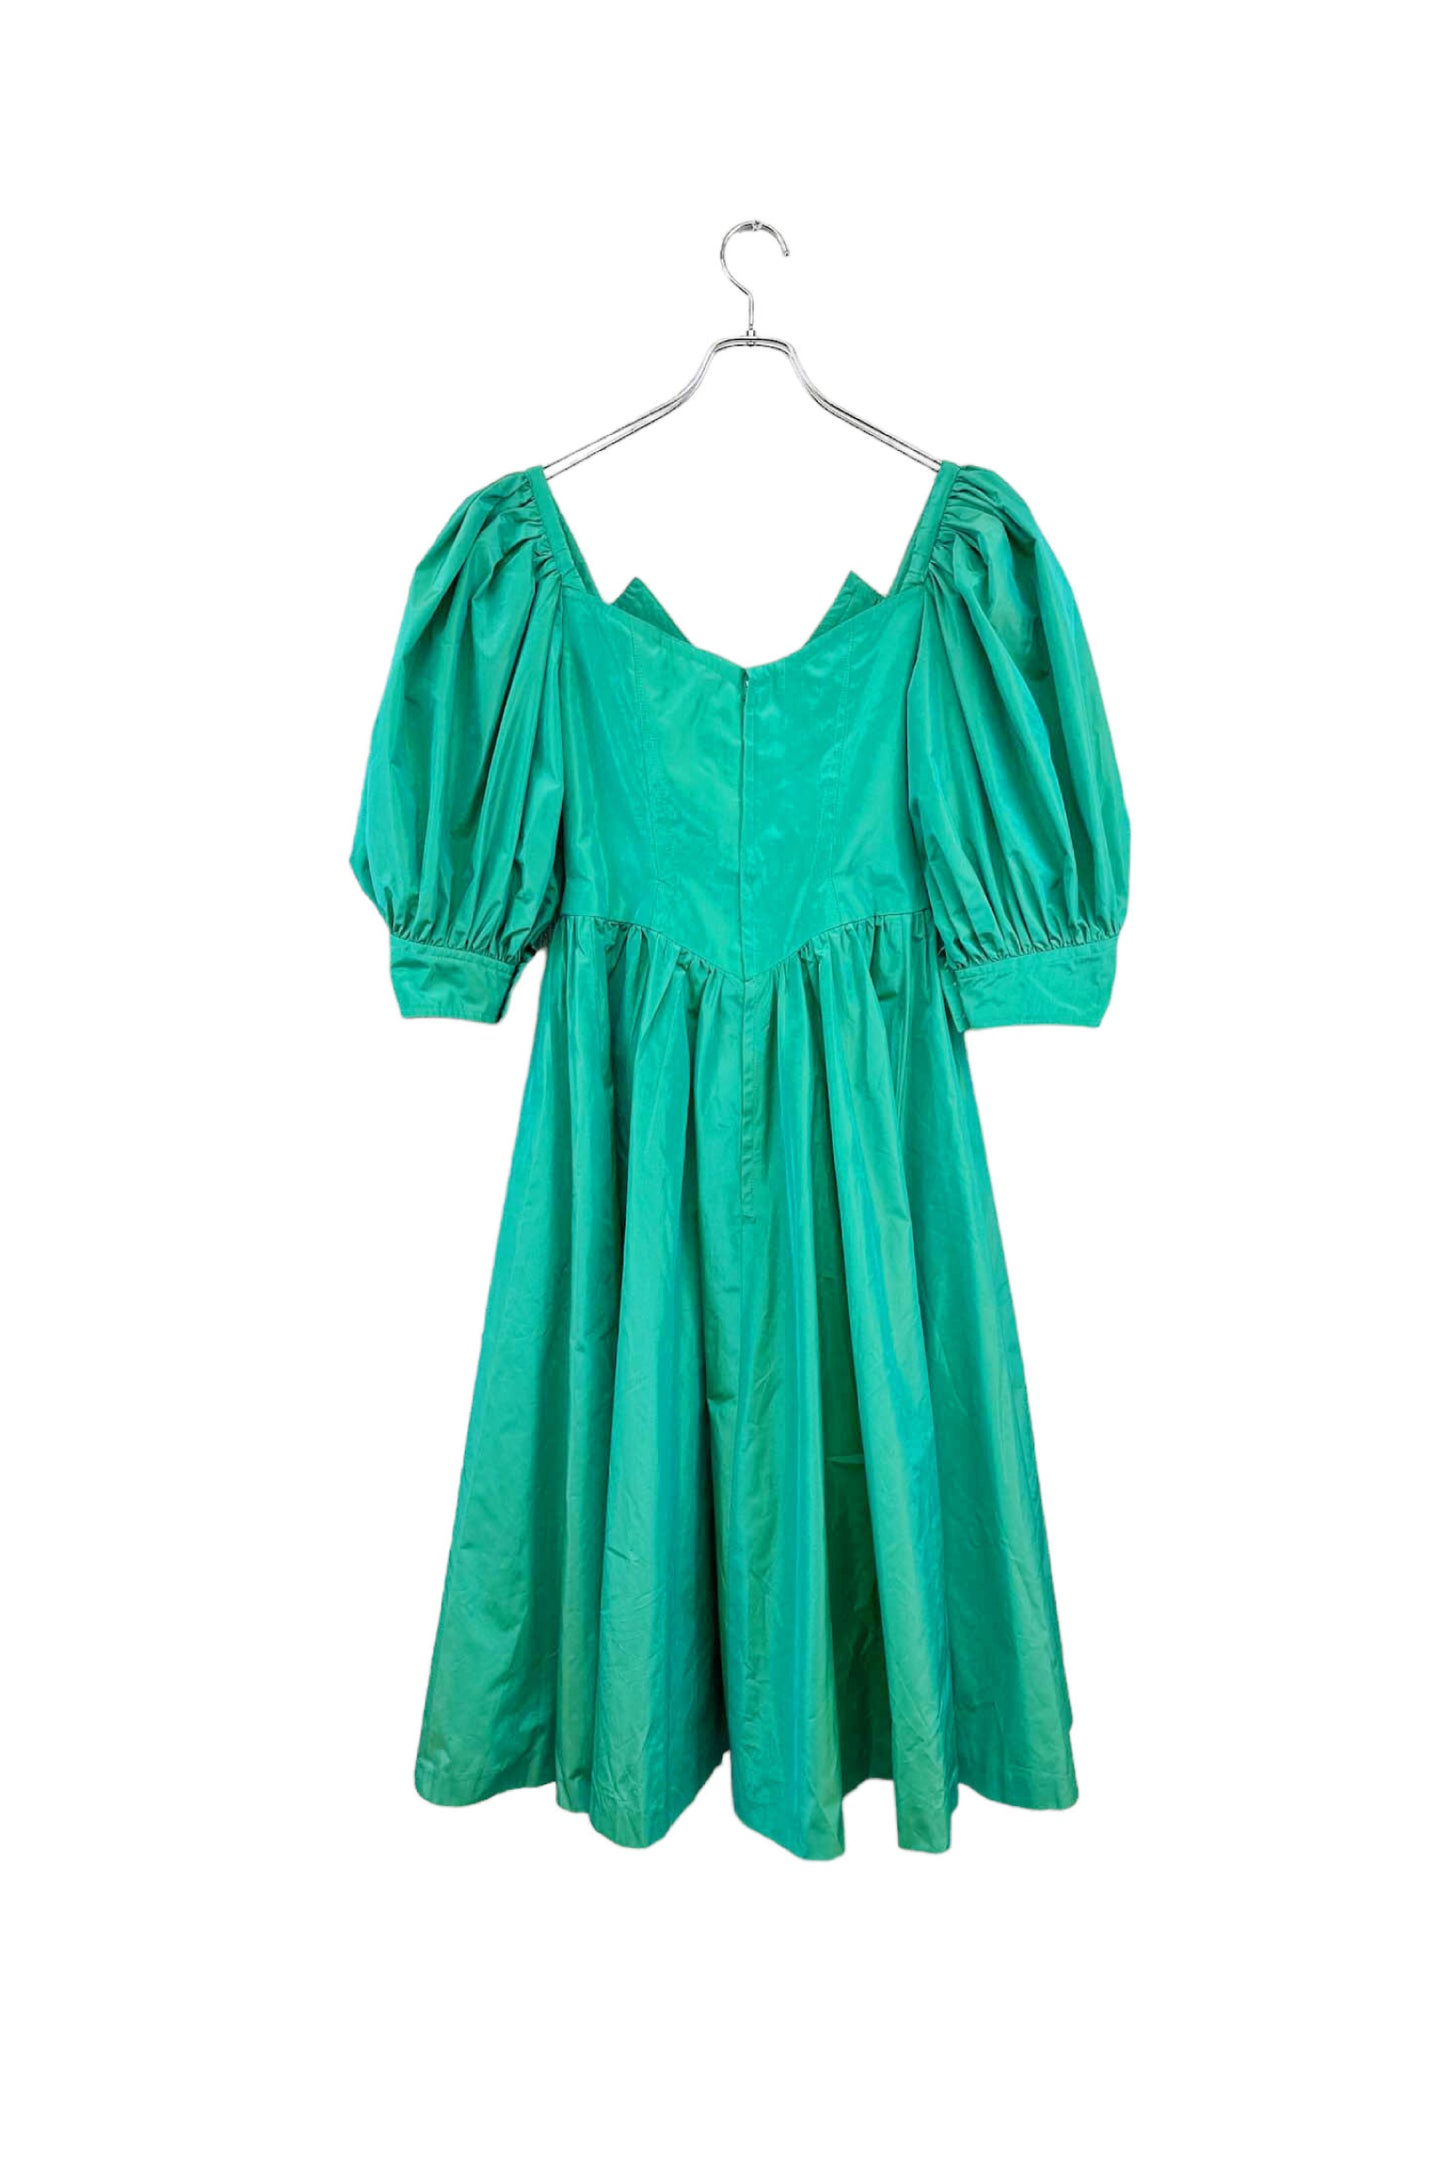 THIERRY MUGLER green dress